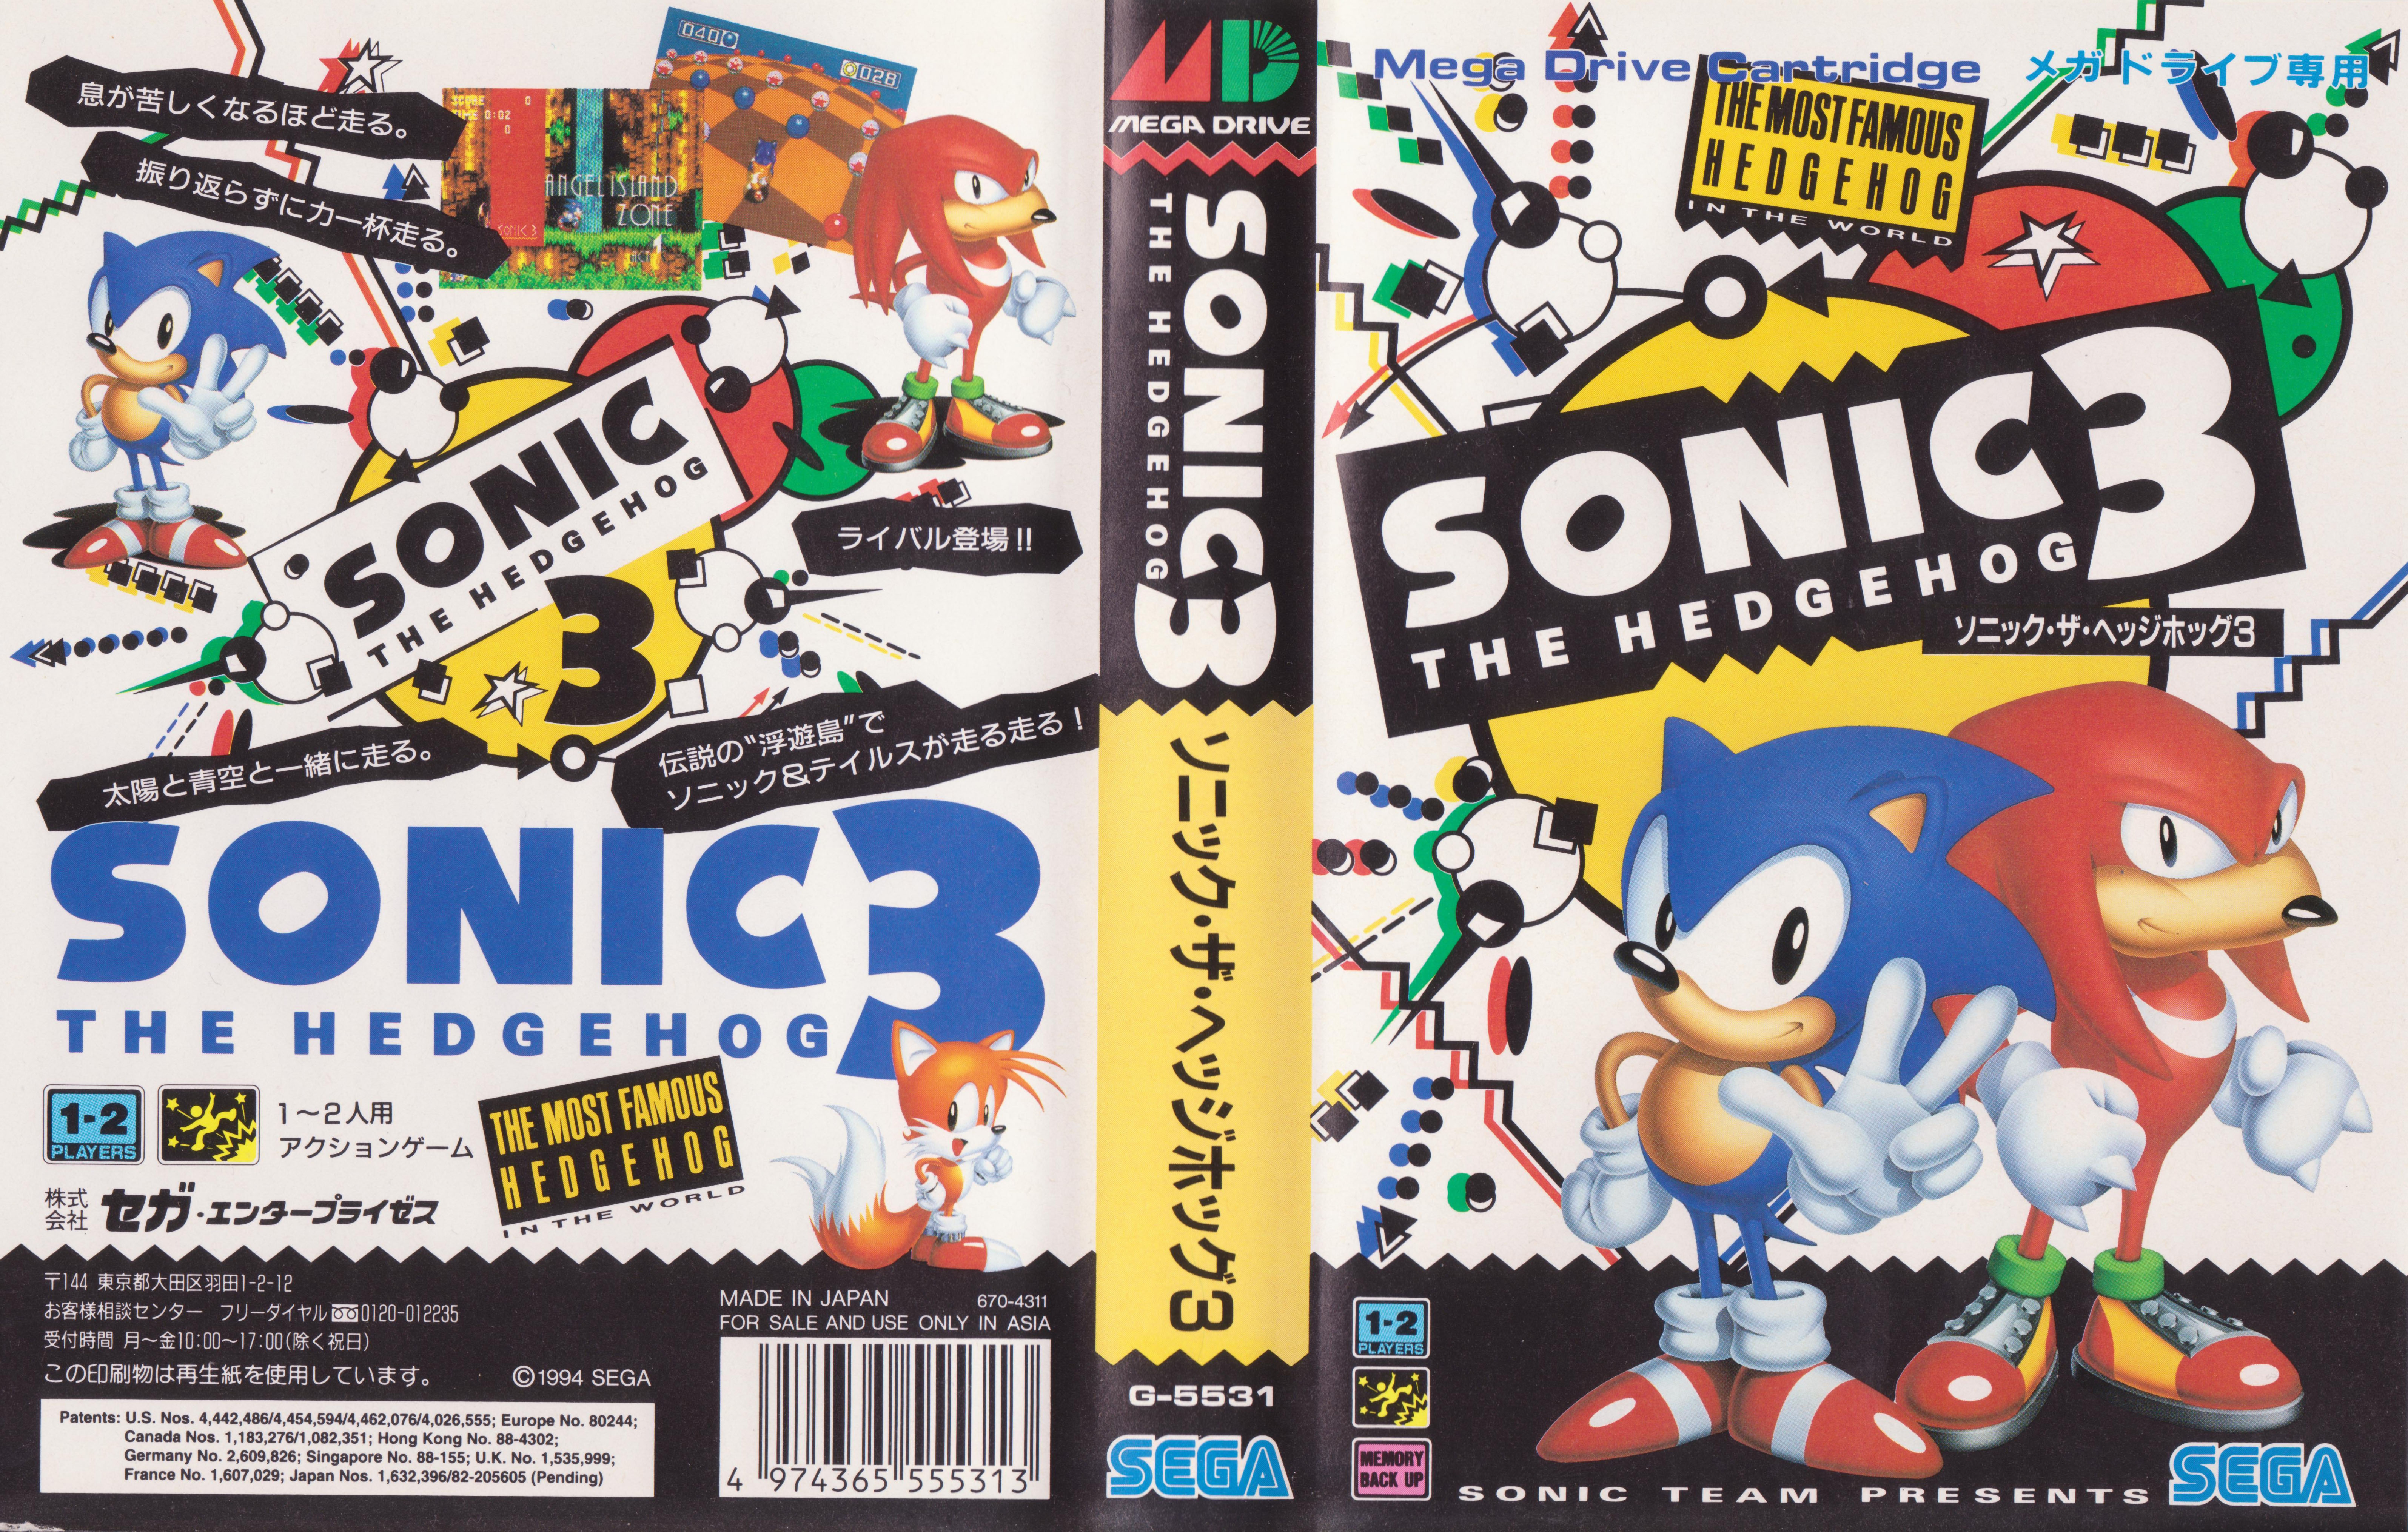 Sonic jp. Sonic 3 Sega Mega Drive. Обложка Sonic 3 Mega Drive. Sonic 2 NTSC коробка. Sonic 3 and Knuckles картридж.